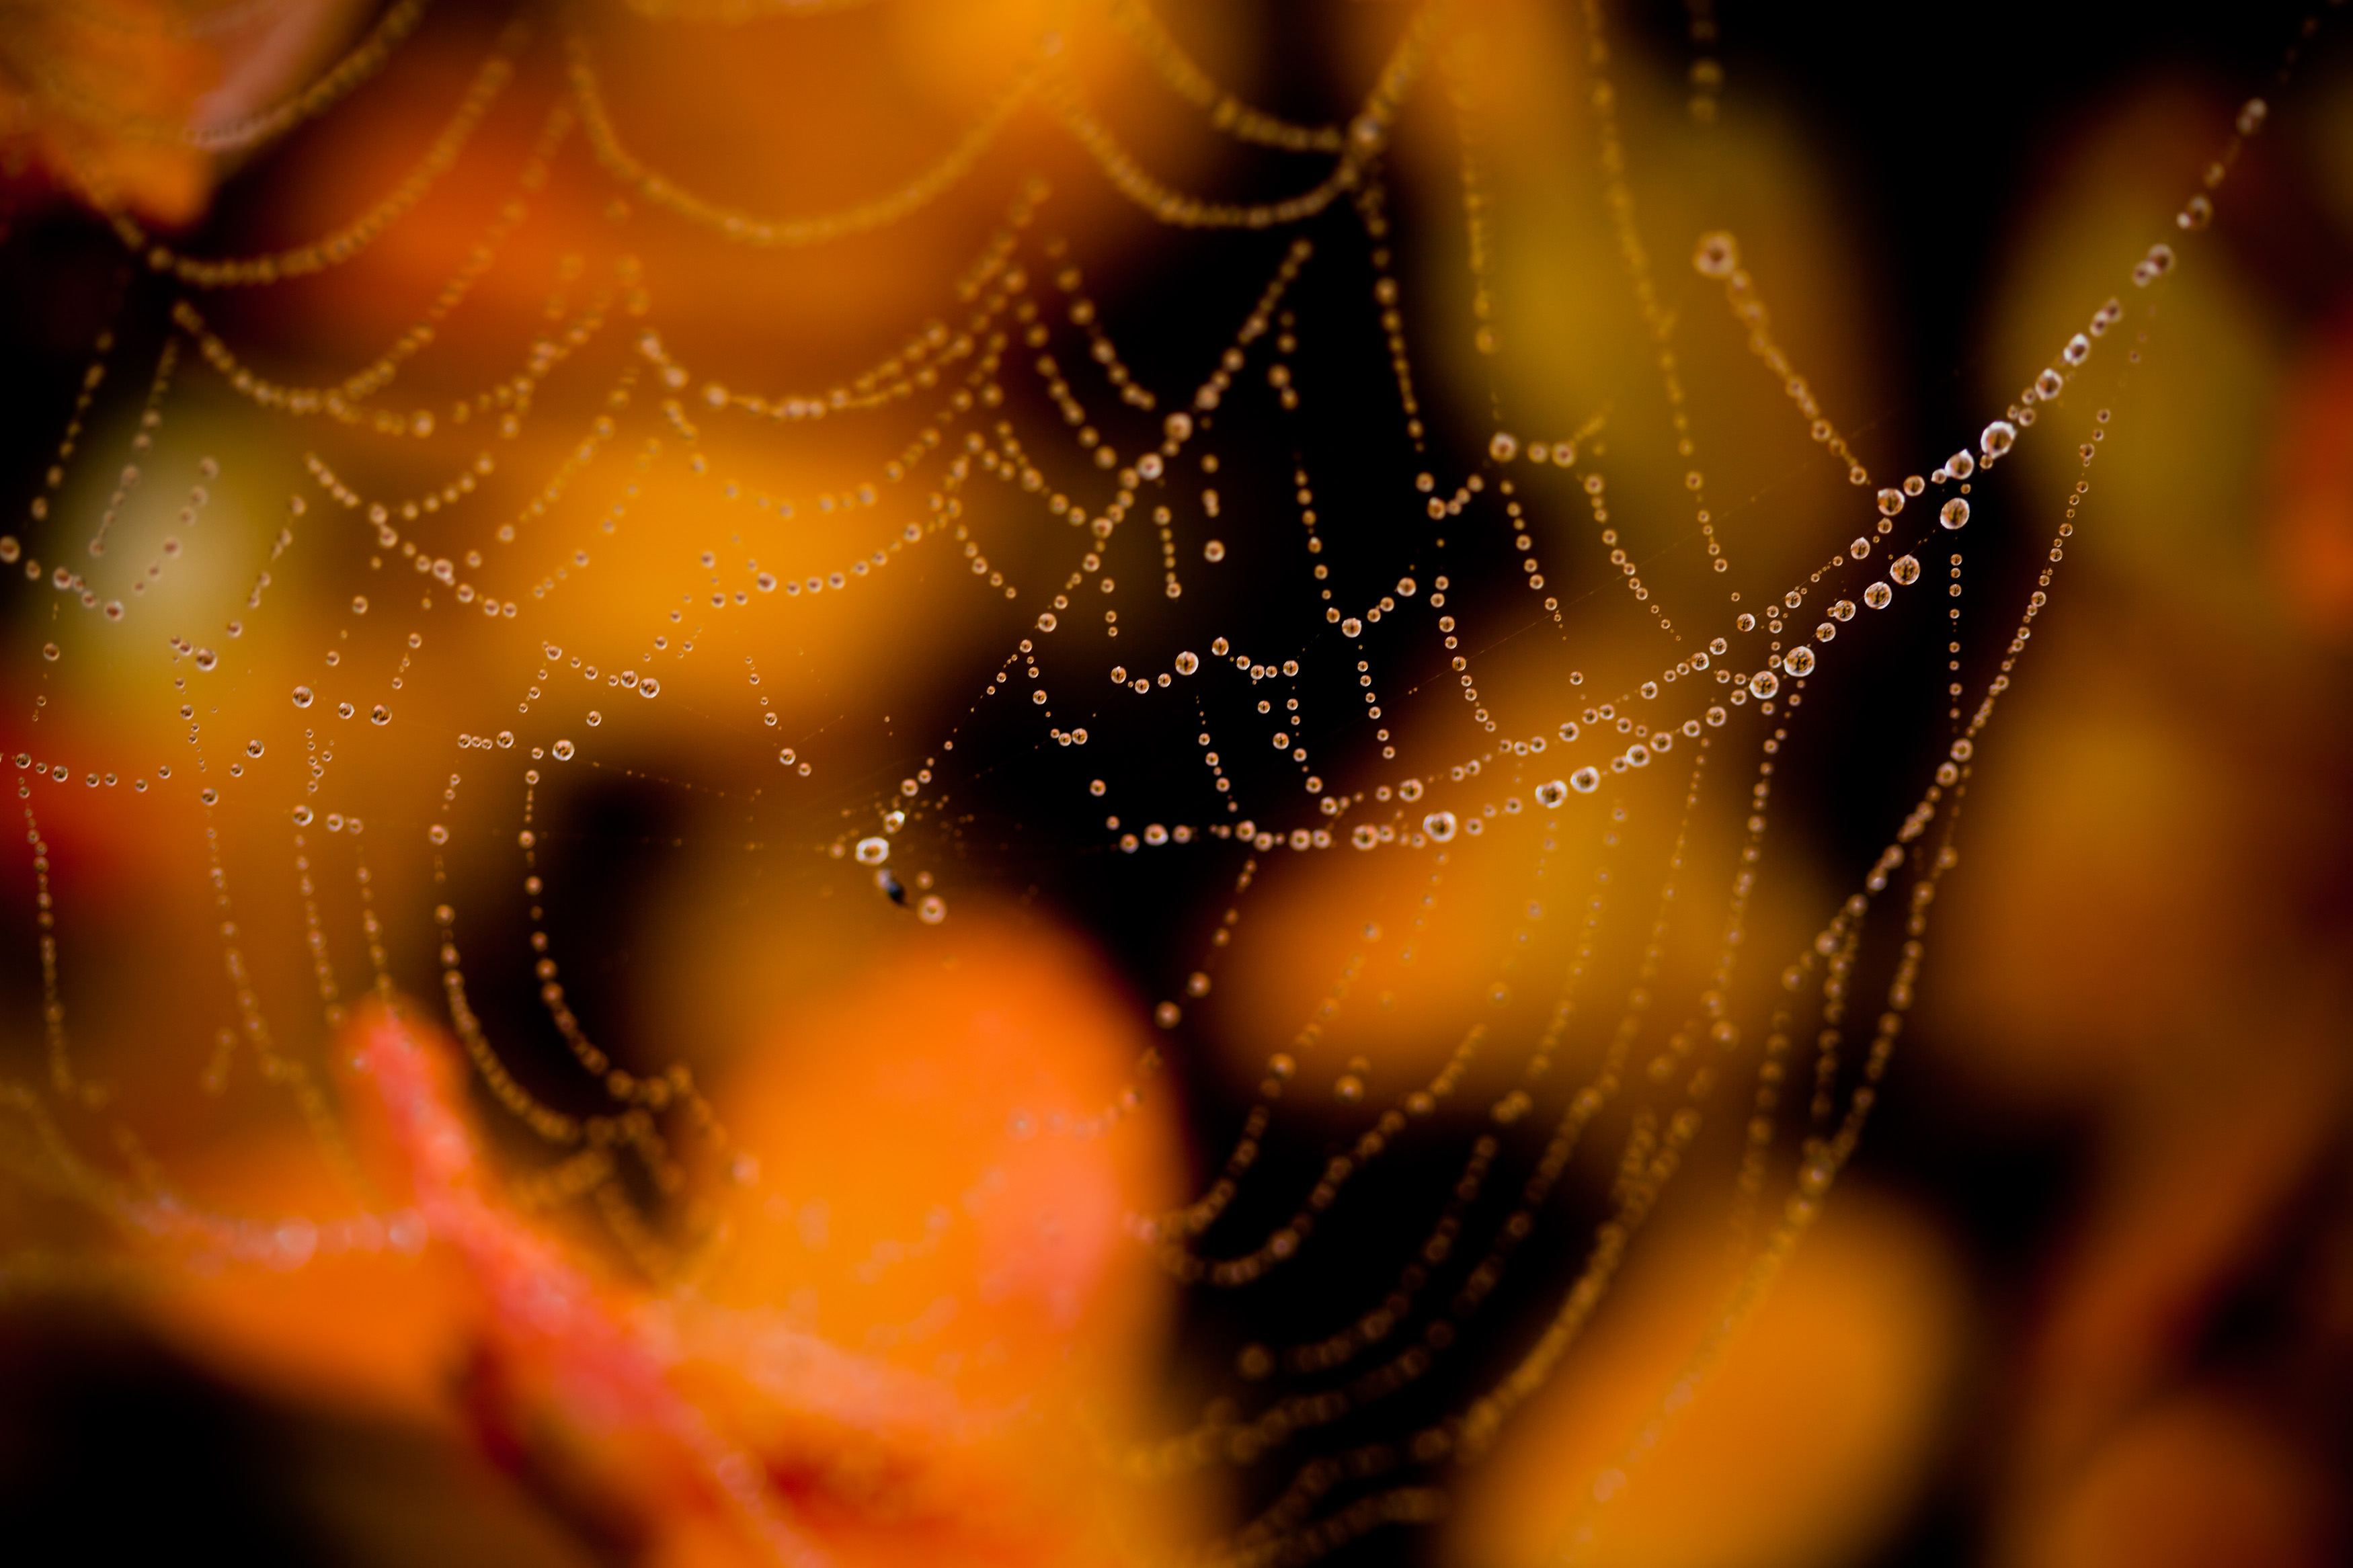 Wet spider web photo